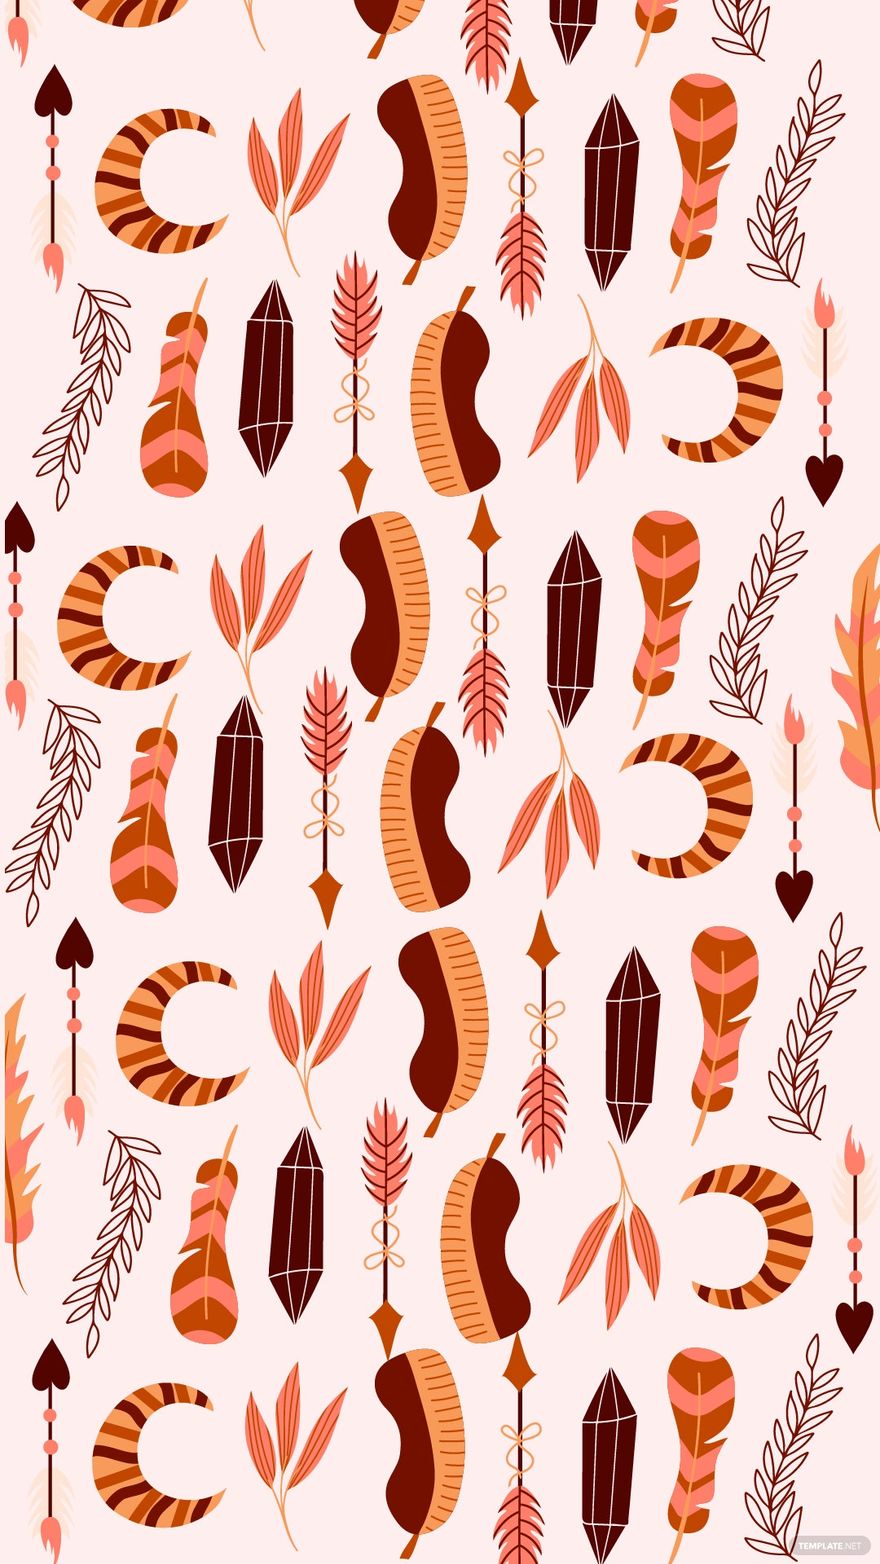 Boho Floral Pattern Background in Illustrator, EPS, SVG, JPG